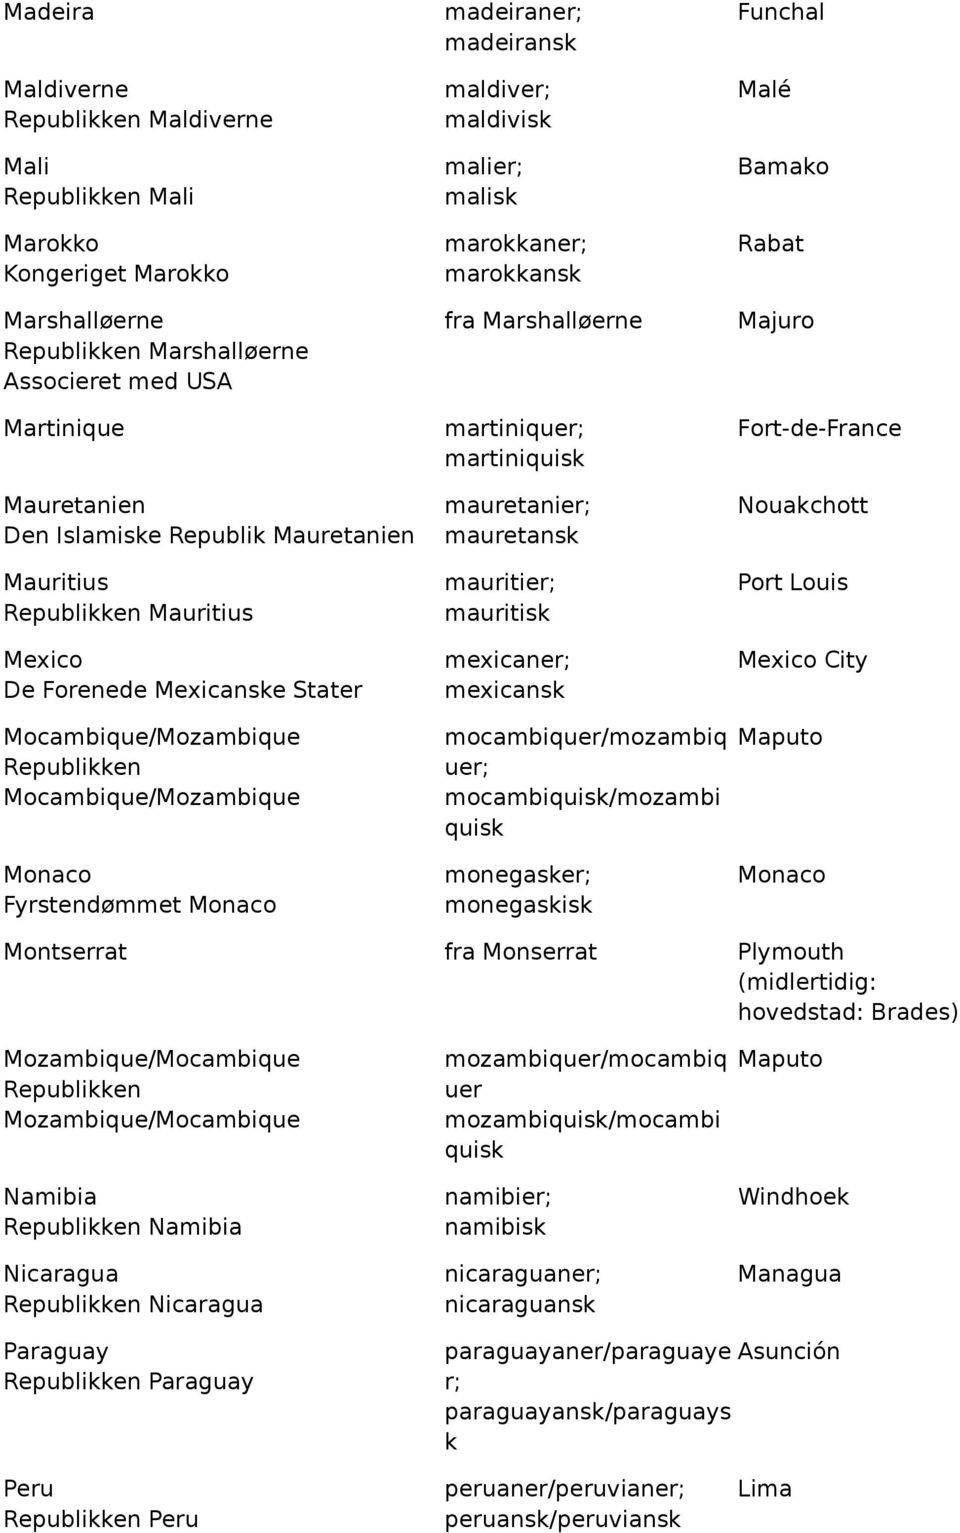 maldivisk malier; malisk marokkaner; marokkansk fra Marshalløerne martiniquer; martiniquisk mauretanier; mauretansk mauritier; mauritisk mexicaner; mexicansk mocambiquer/mozambiq uer;